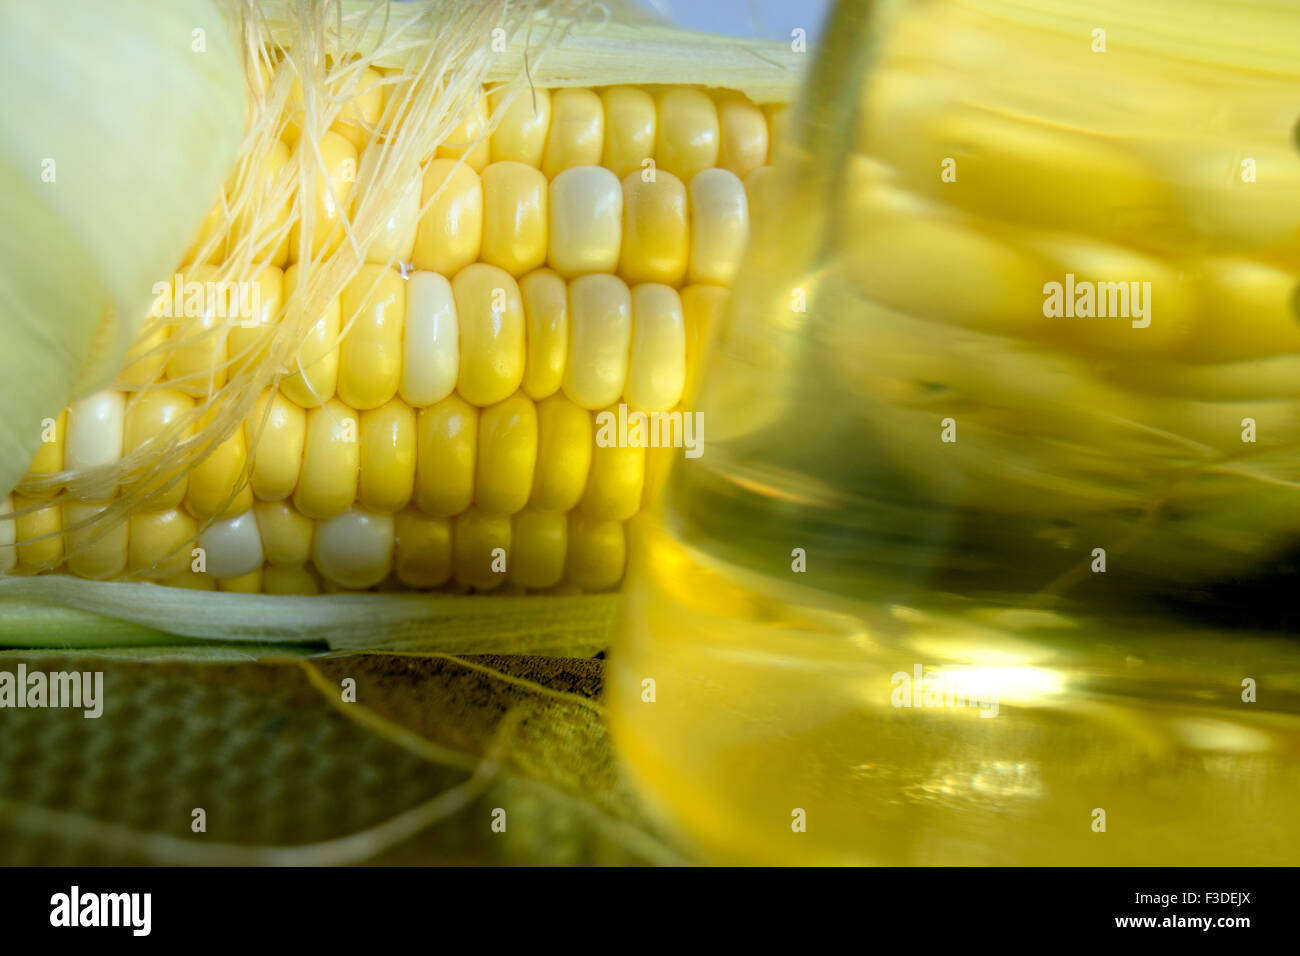 corn and corn oil Stock Photo